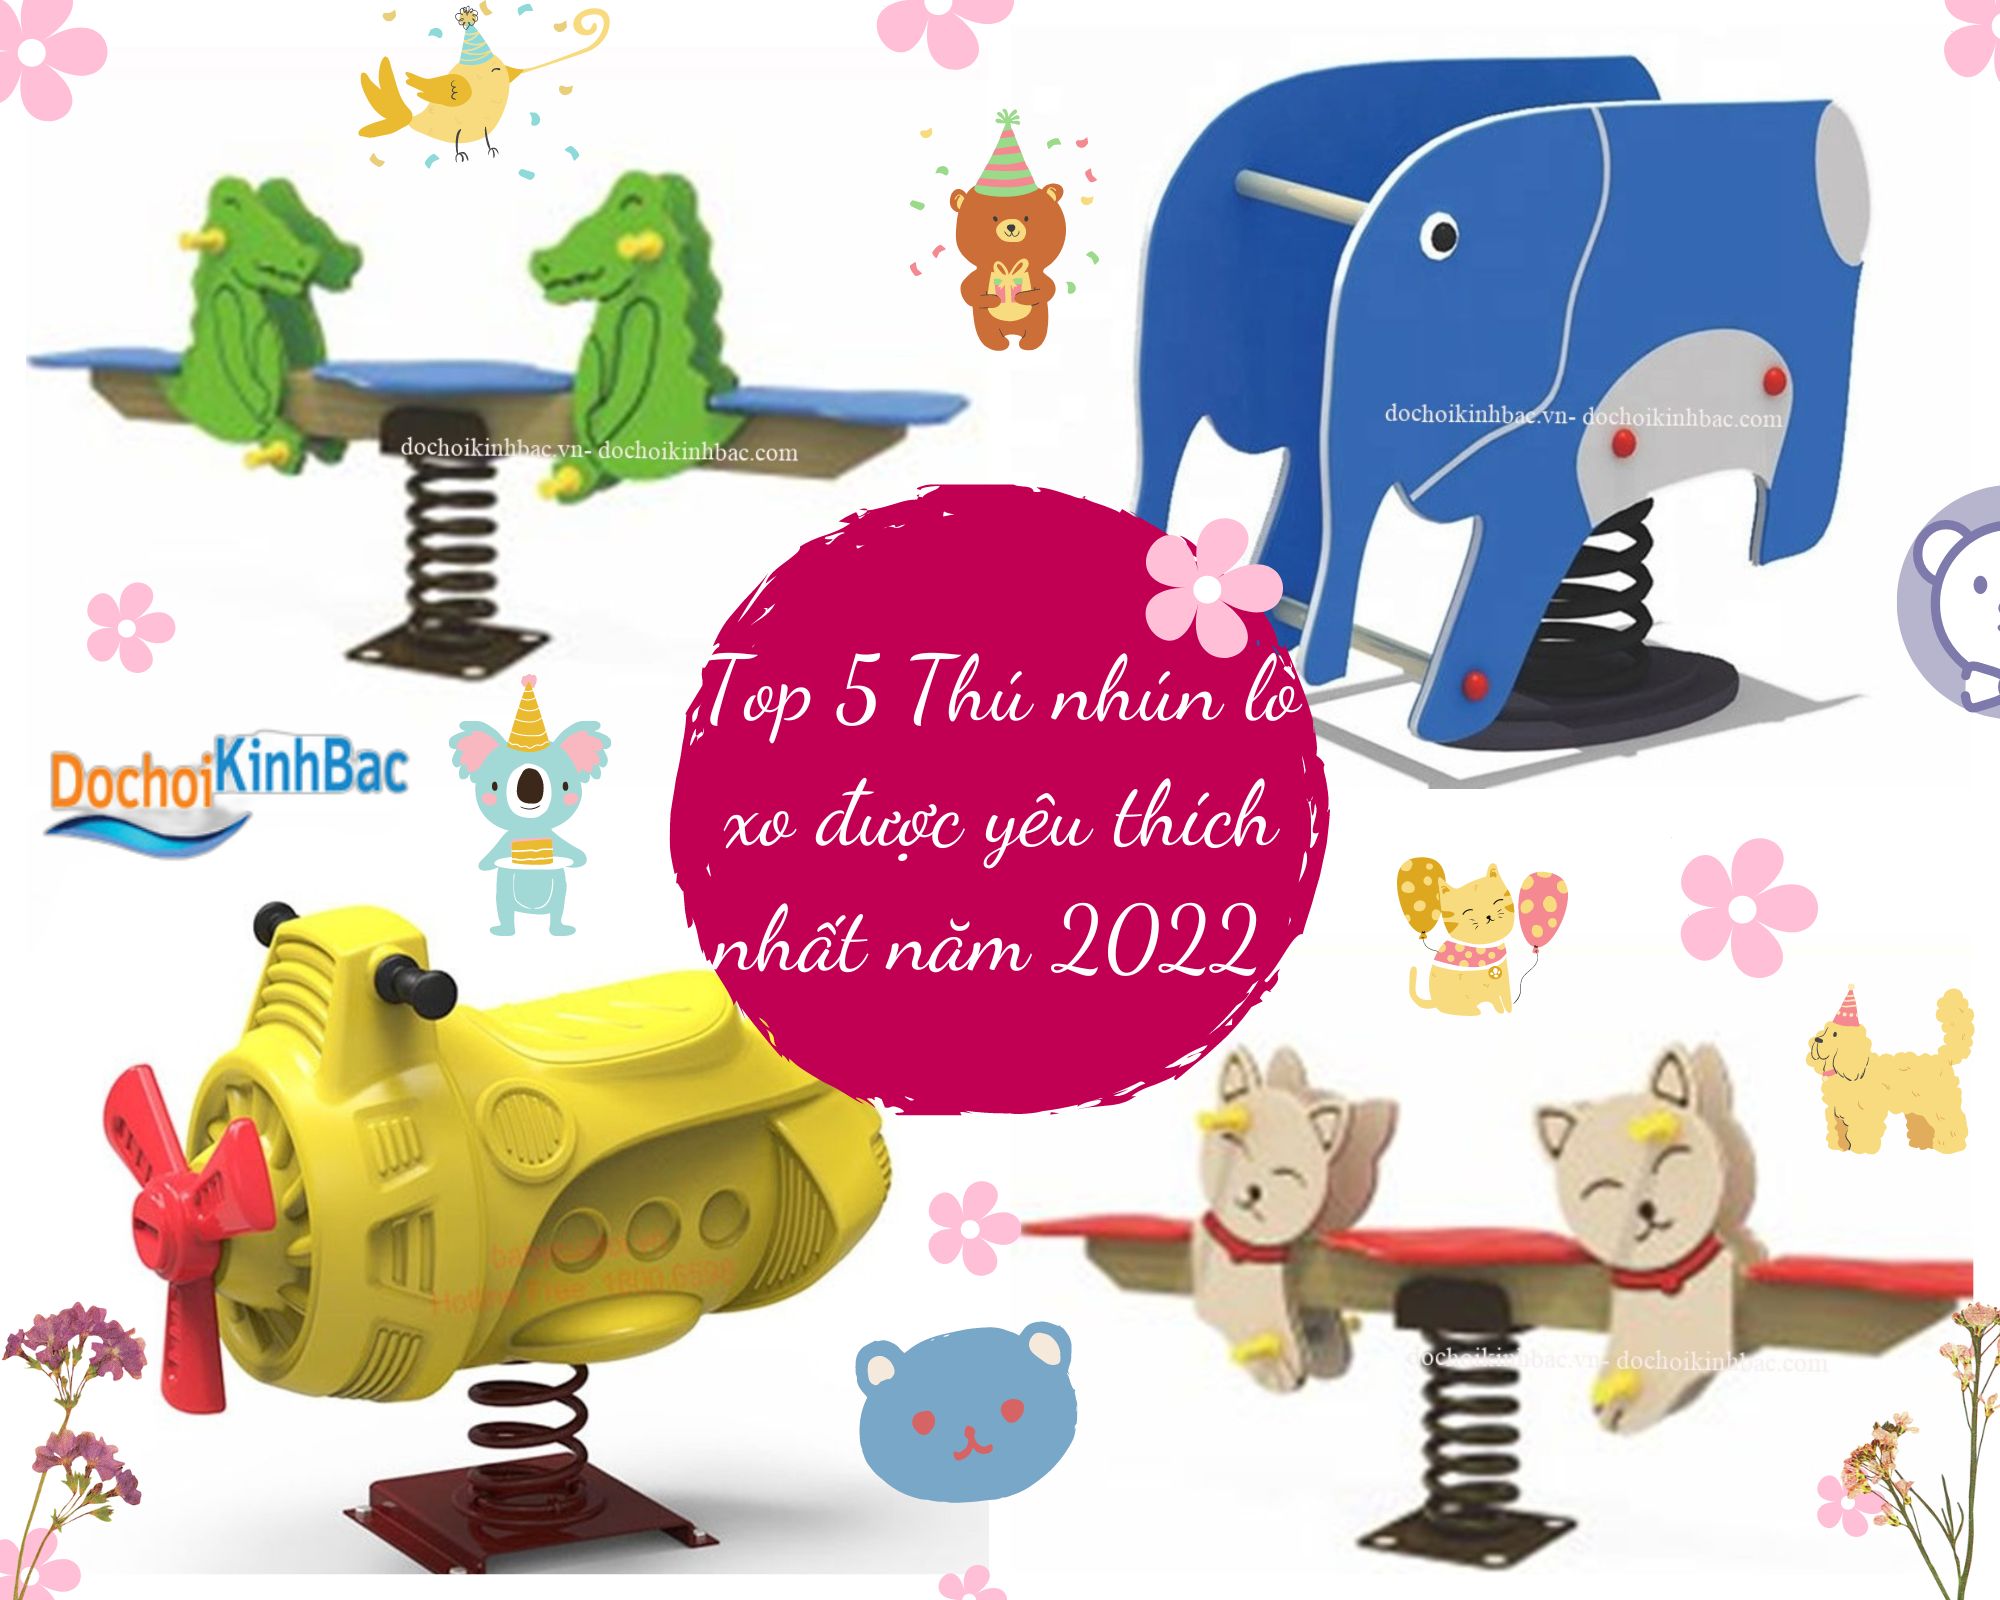 Top 5 Thú nhún lò xo được yêu thích nhất năm 2022 tại Mường Hum, Bảo Yên, Lào Cai